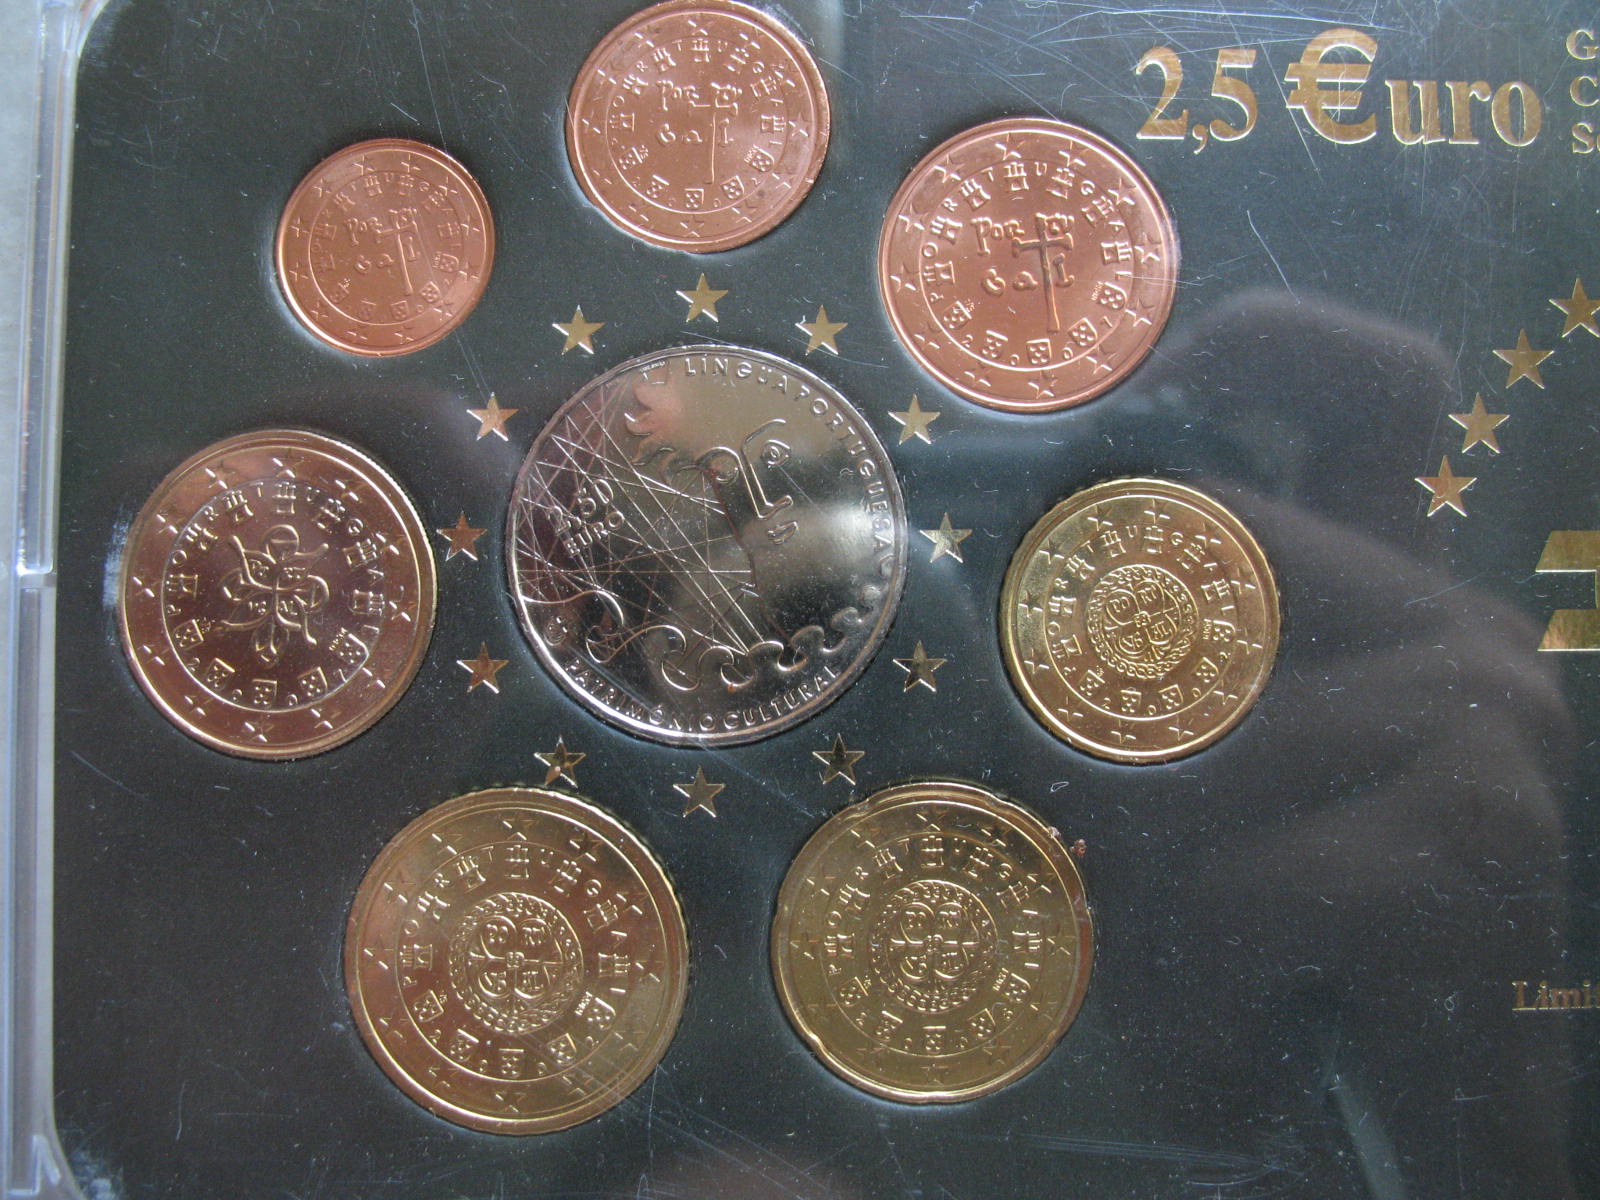 葡萄牙欧元套币带盒装(2.5欧元纪念币) 中邮网